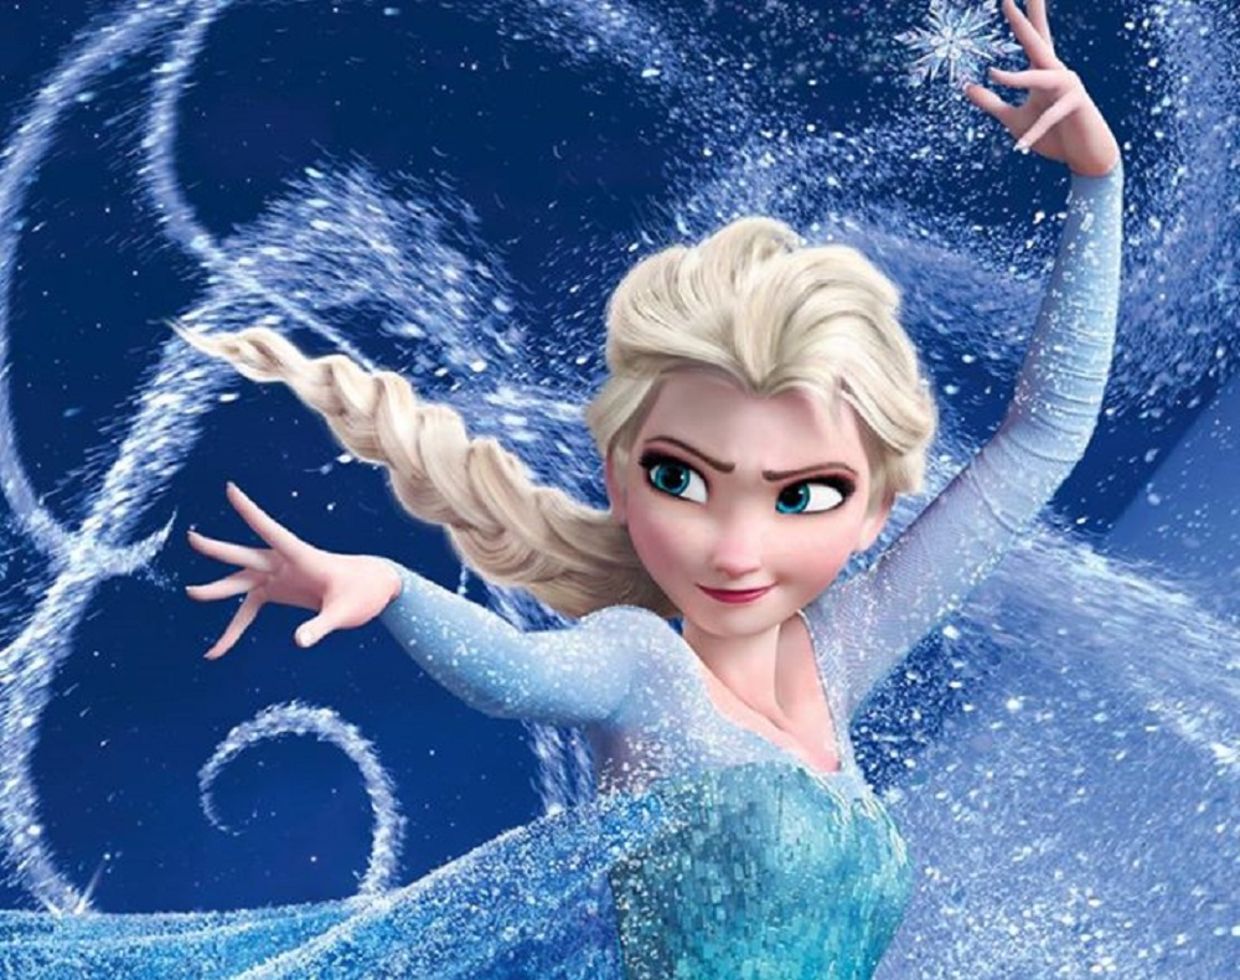 Elsa from Frozen - wide 4